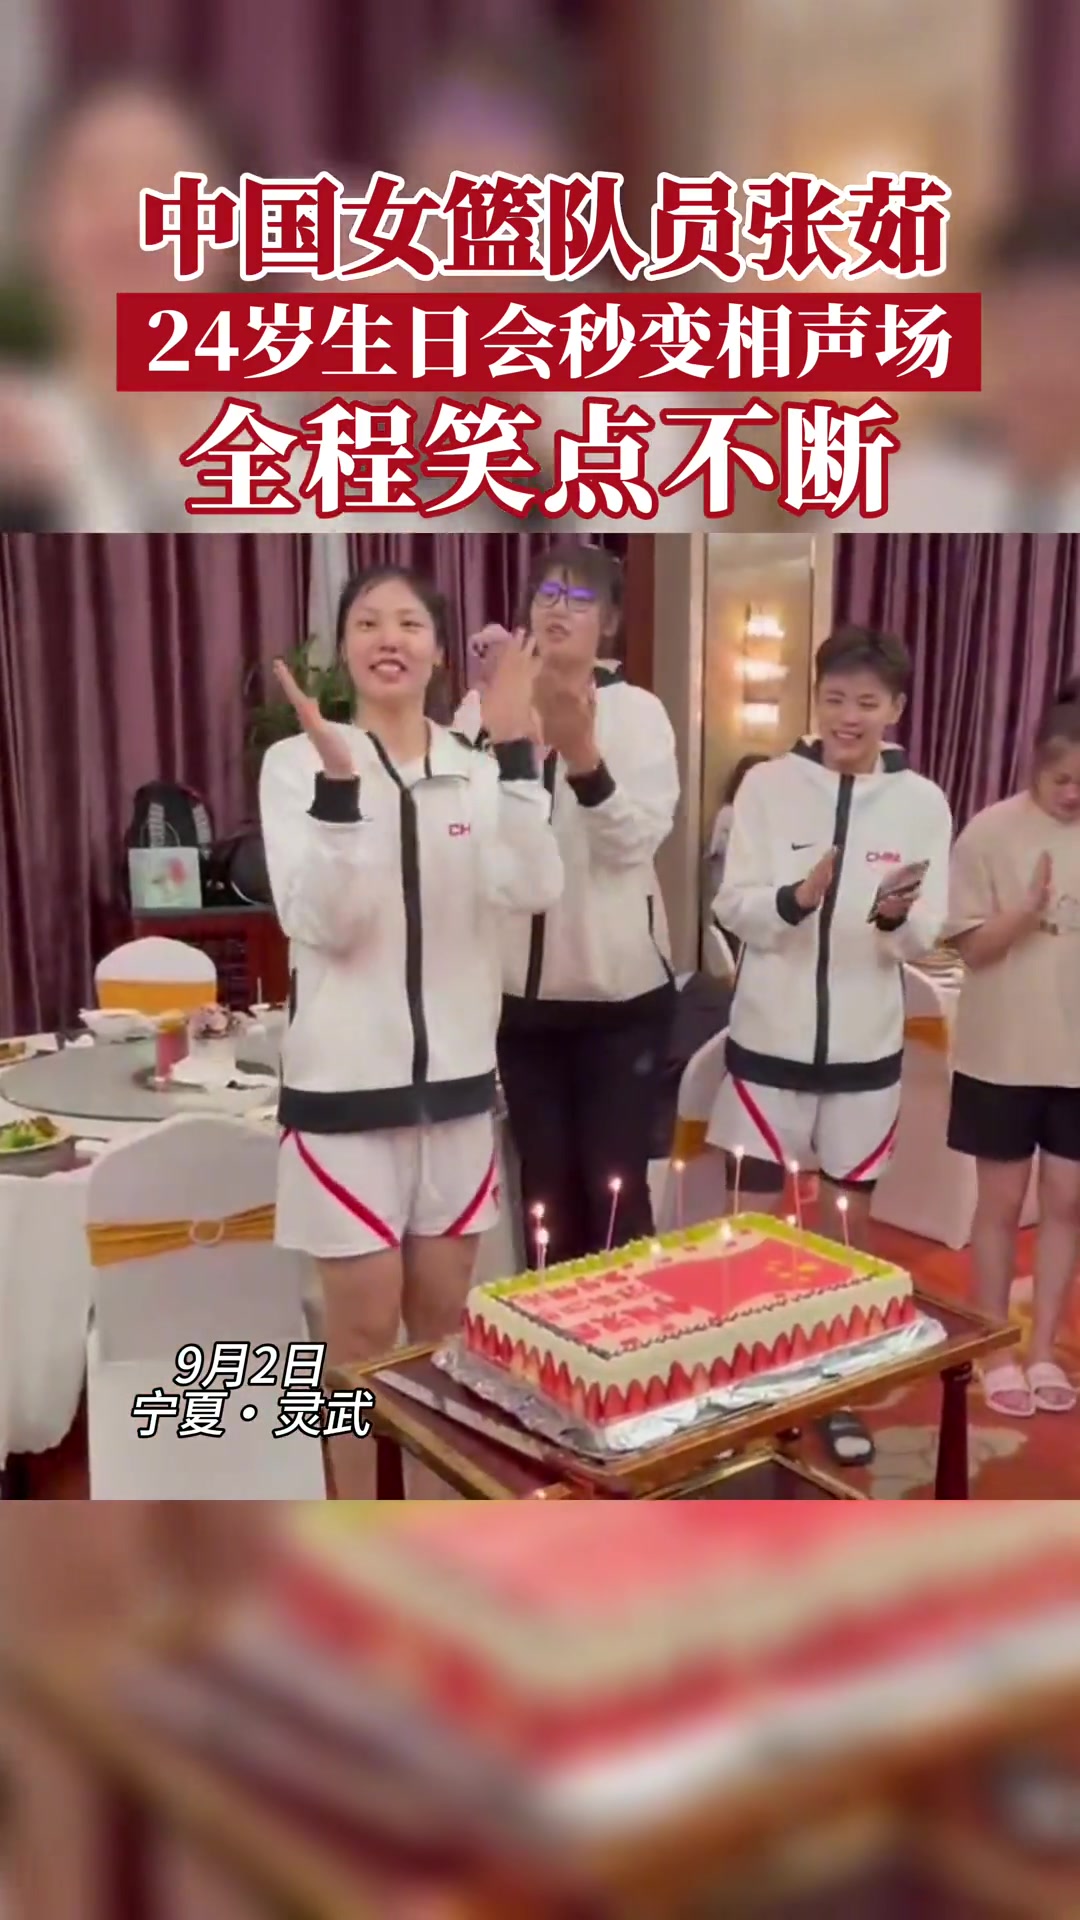 中国女篮庆祝队员张茹24岁生日 生日会变春节晚会????